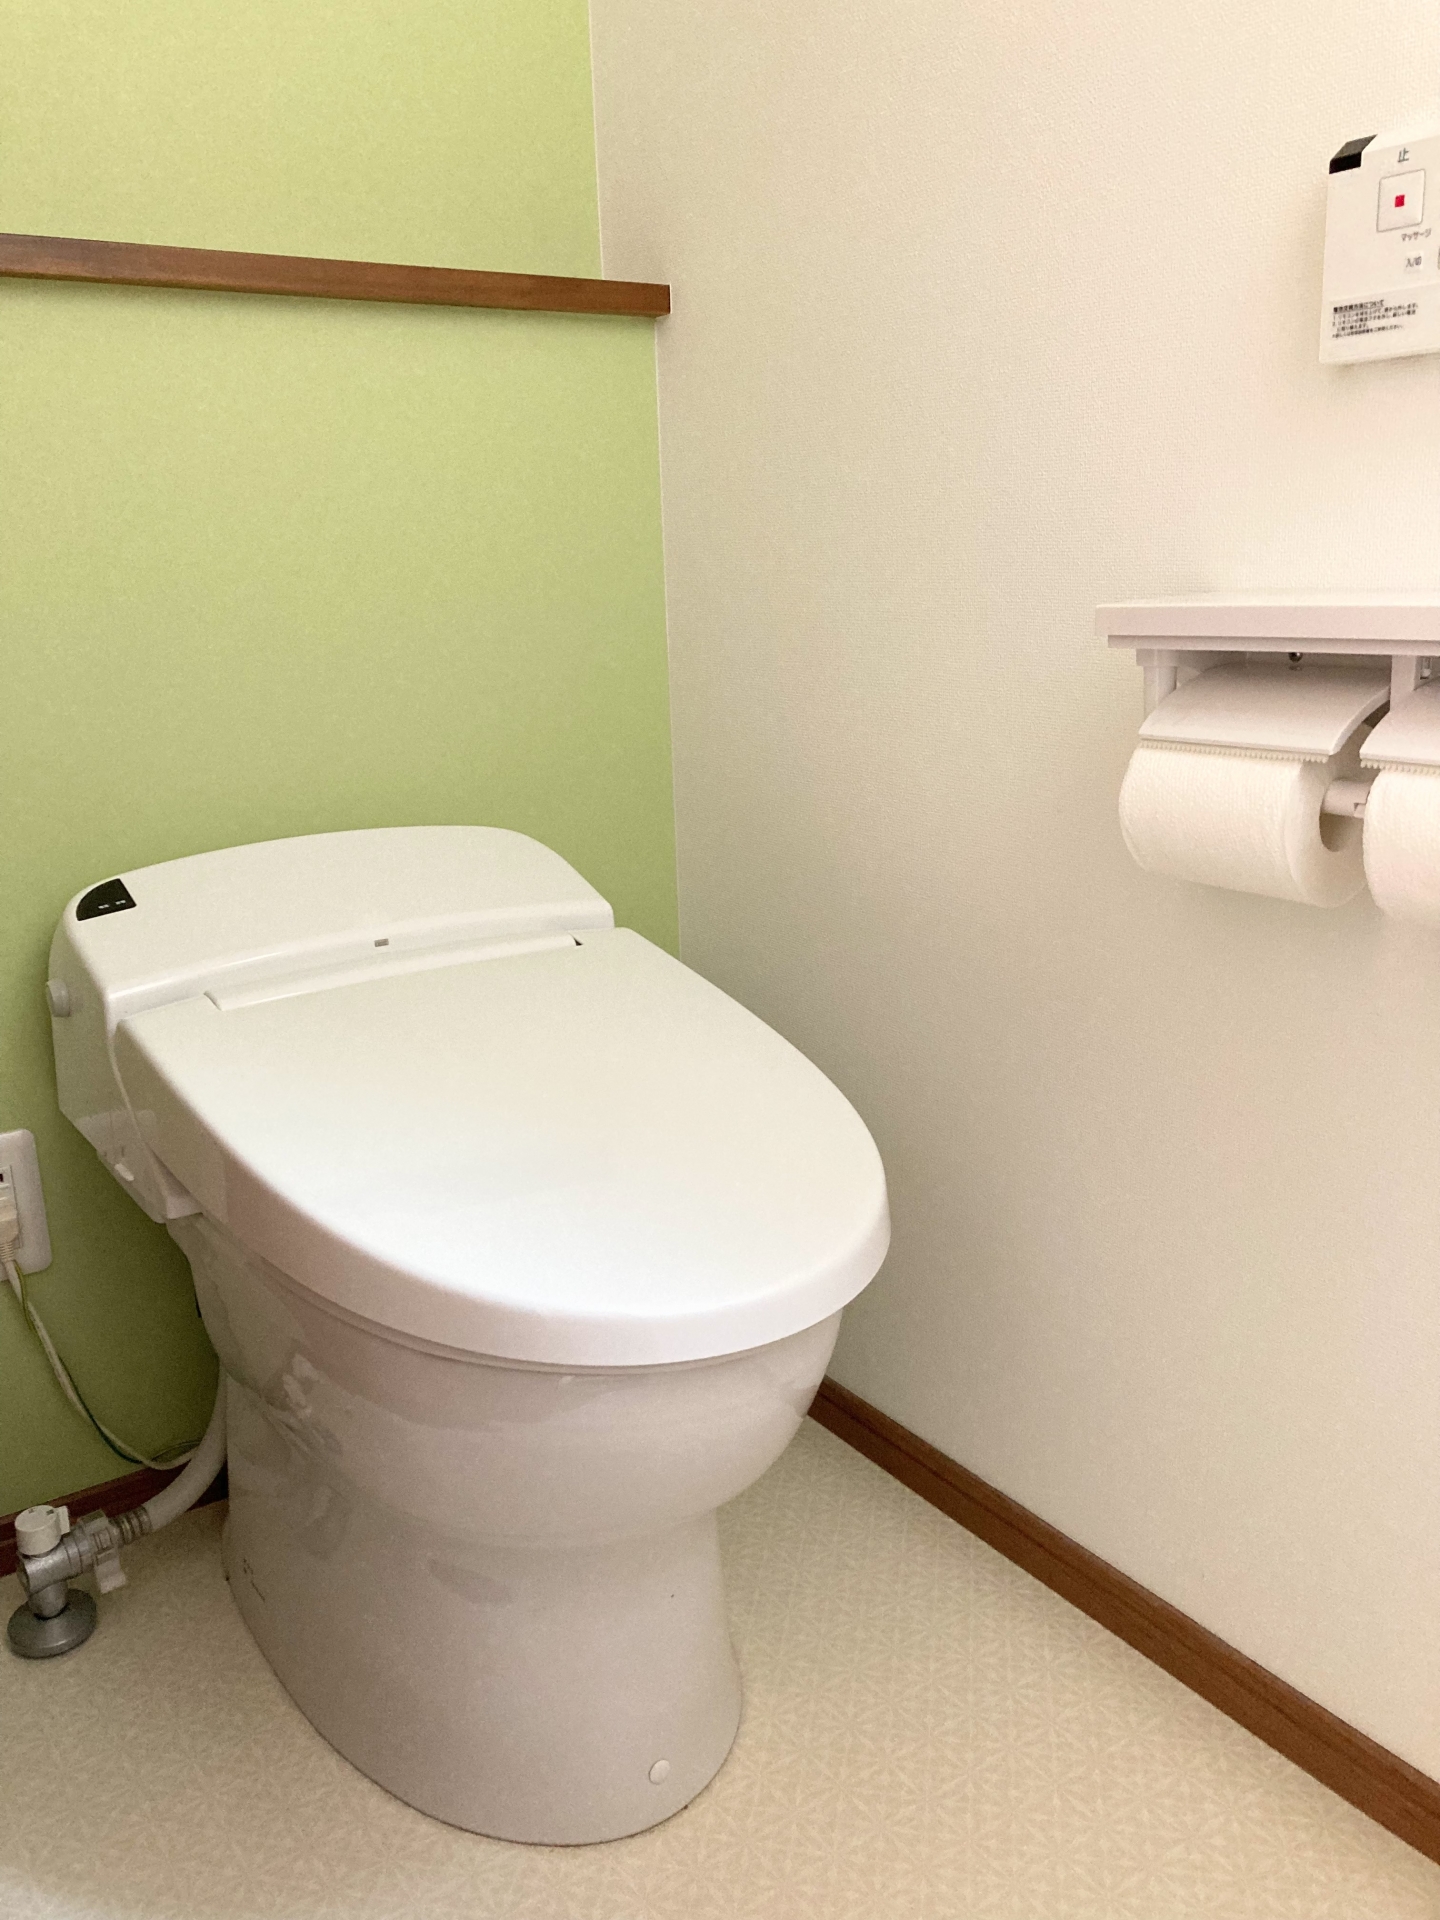 トイレ止水栓の写真